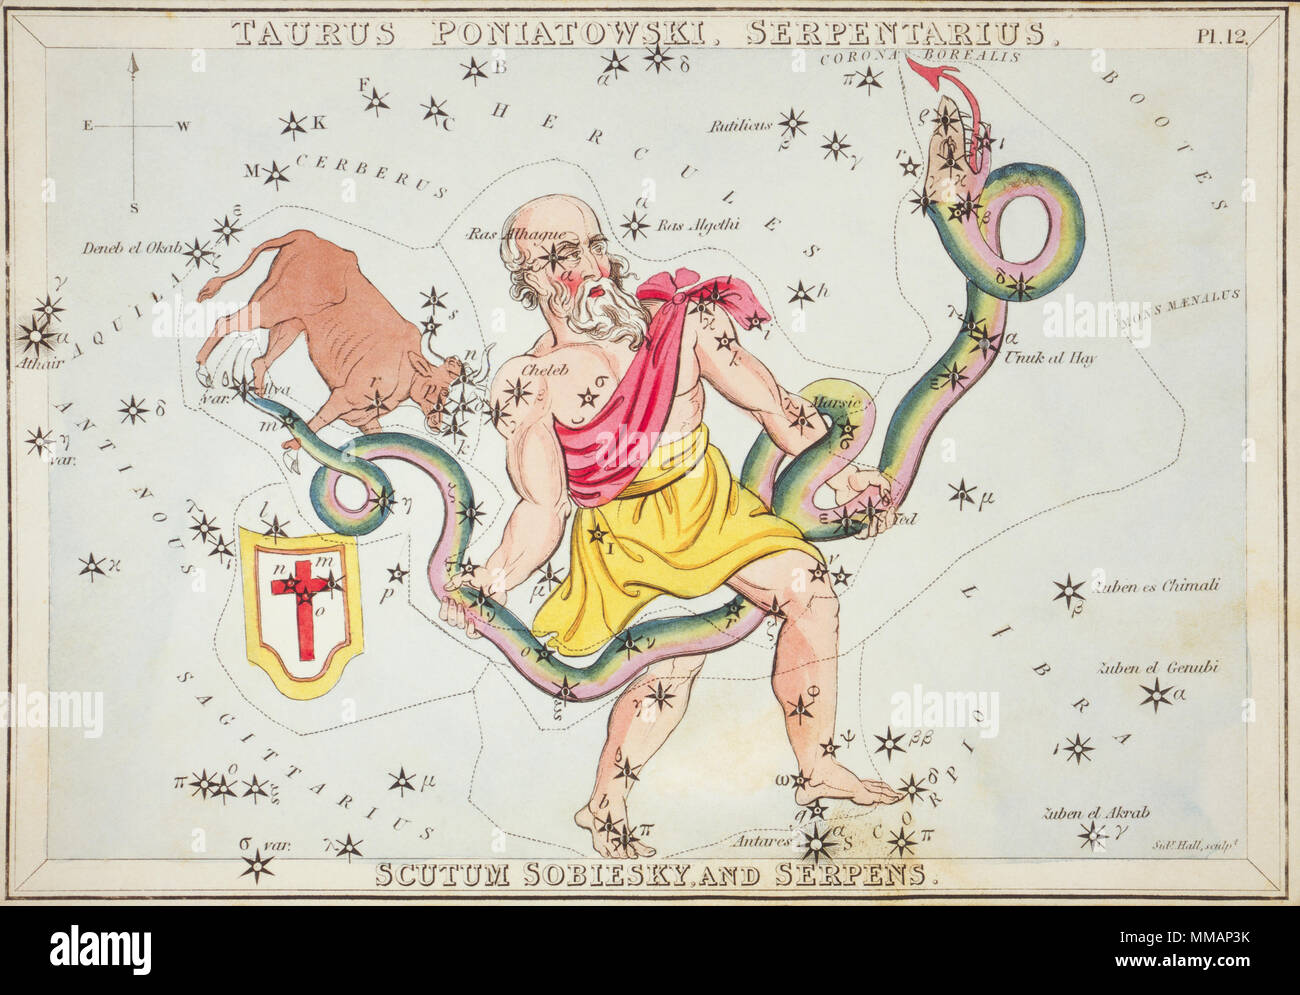 Taurus Poniatowski, Serpentarius, Scutum Sobiesky, und Serpens. Karte Nummer 12 von Urania's Mirror, oder einen Blick auf den Himmel, eines der 32 astronomischen Star Chart Karten von Sidney Hall graviert und publshed 1824. Stockfoto